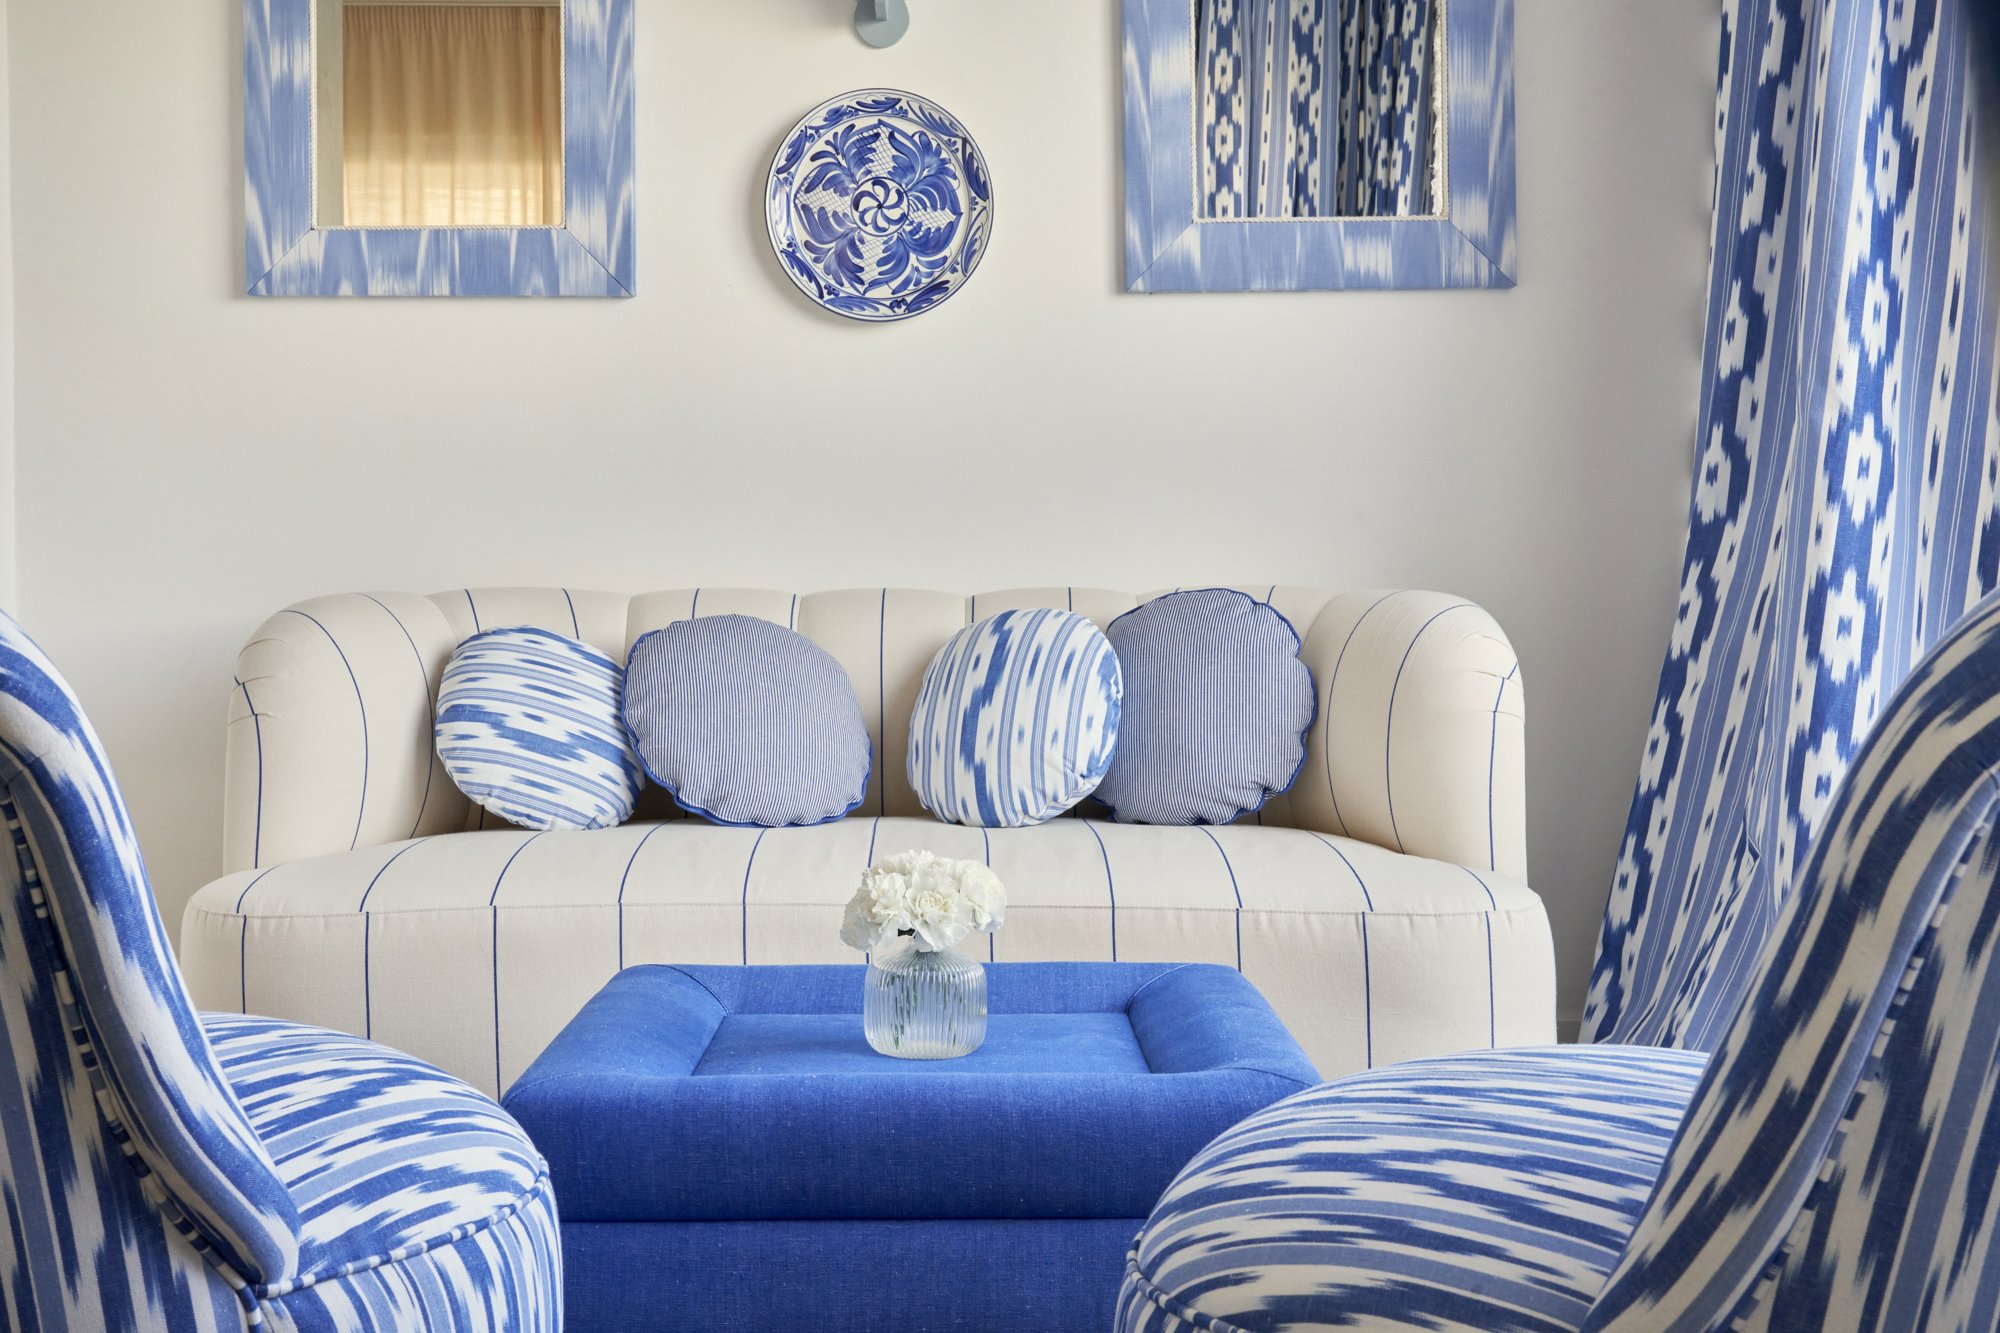 sofa, butacas y mesas todo de colores azules